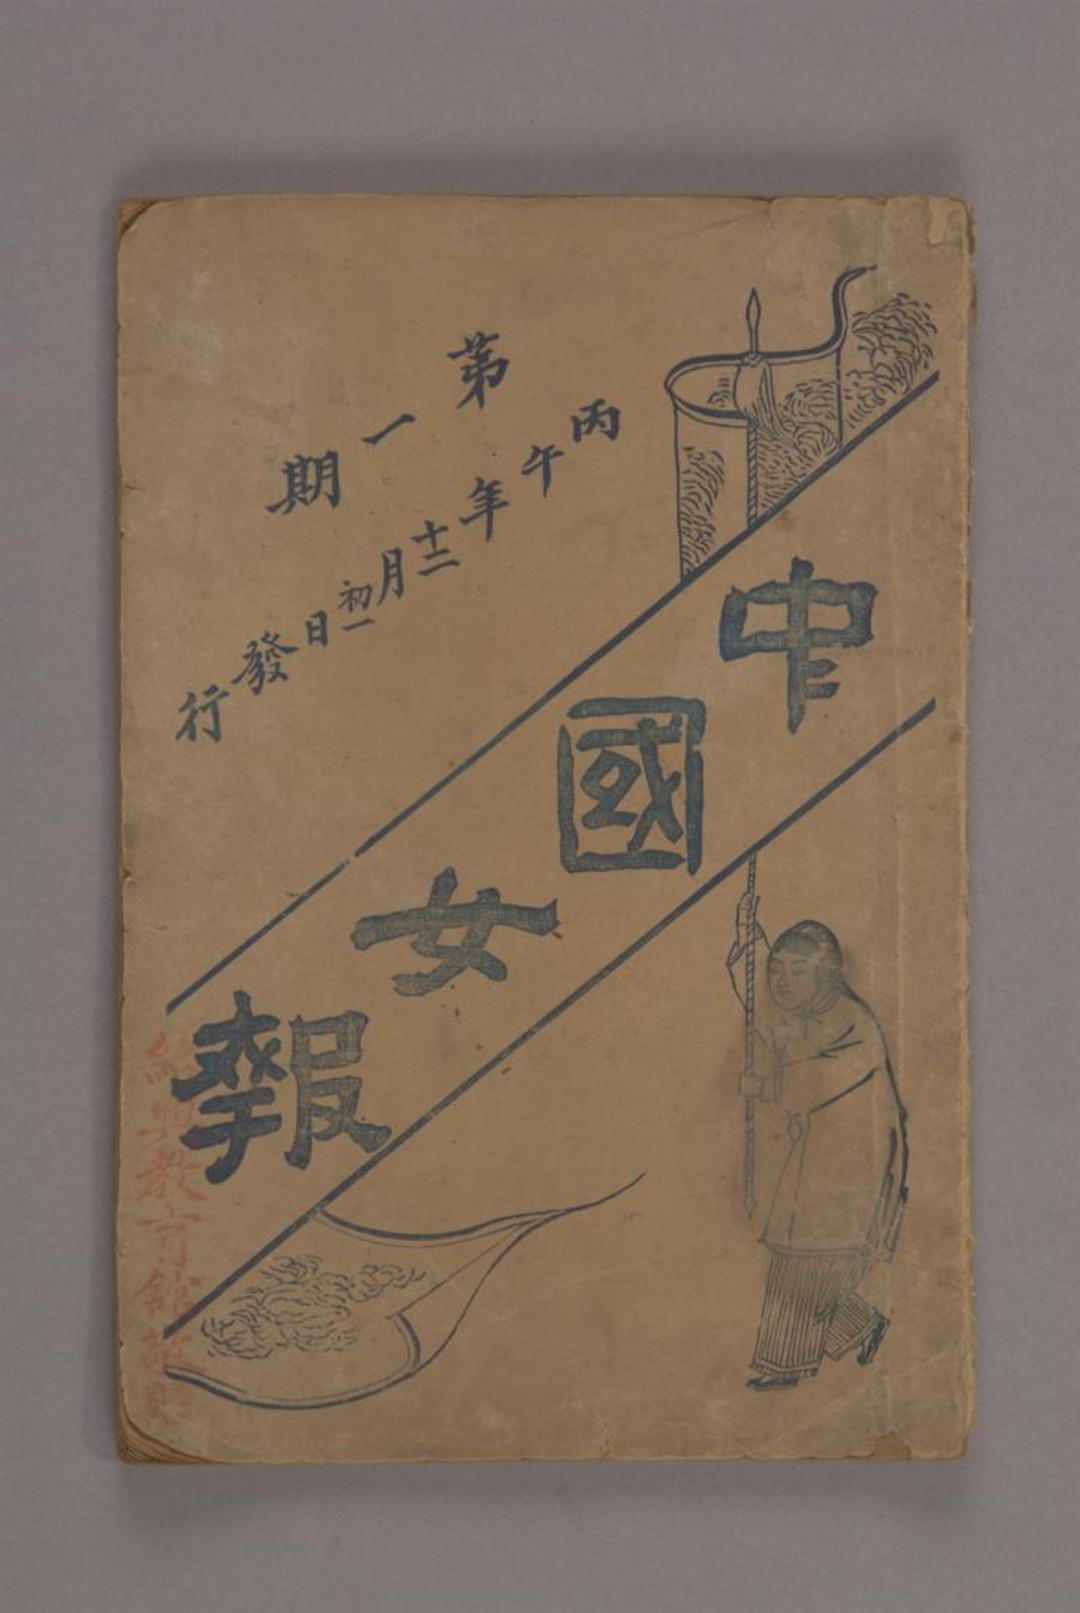 1907年 《中国女报》第一期 浙江省博物馆藏